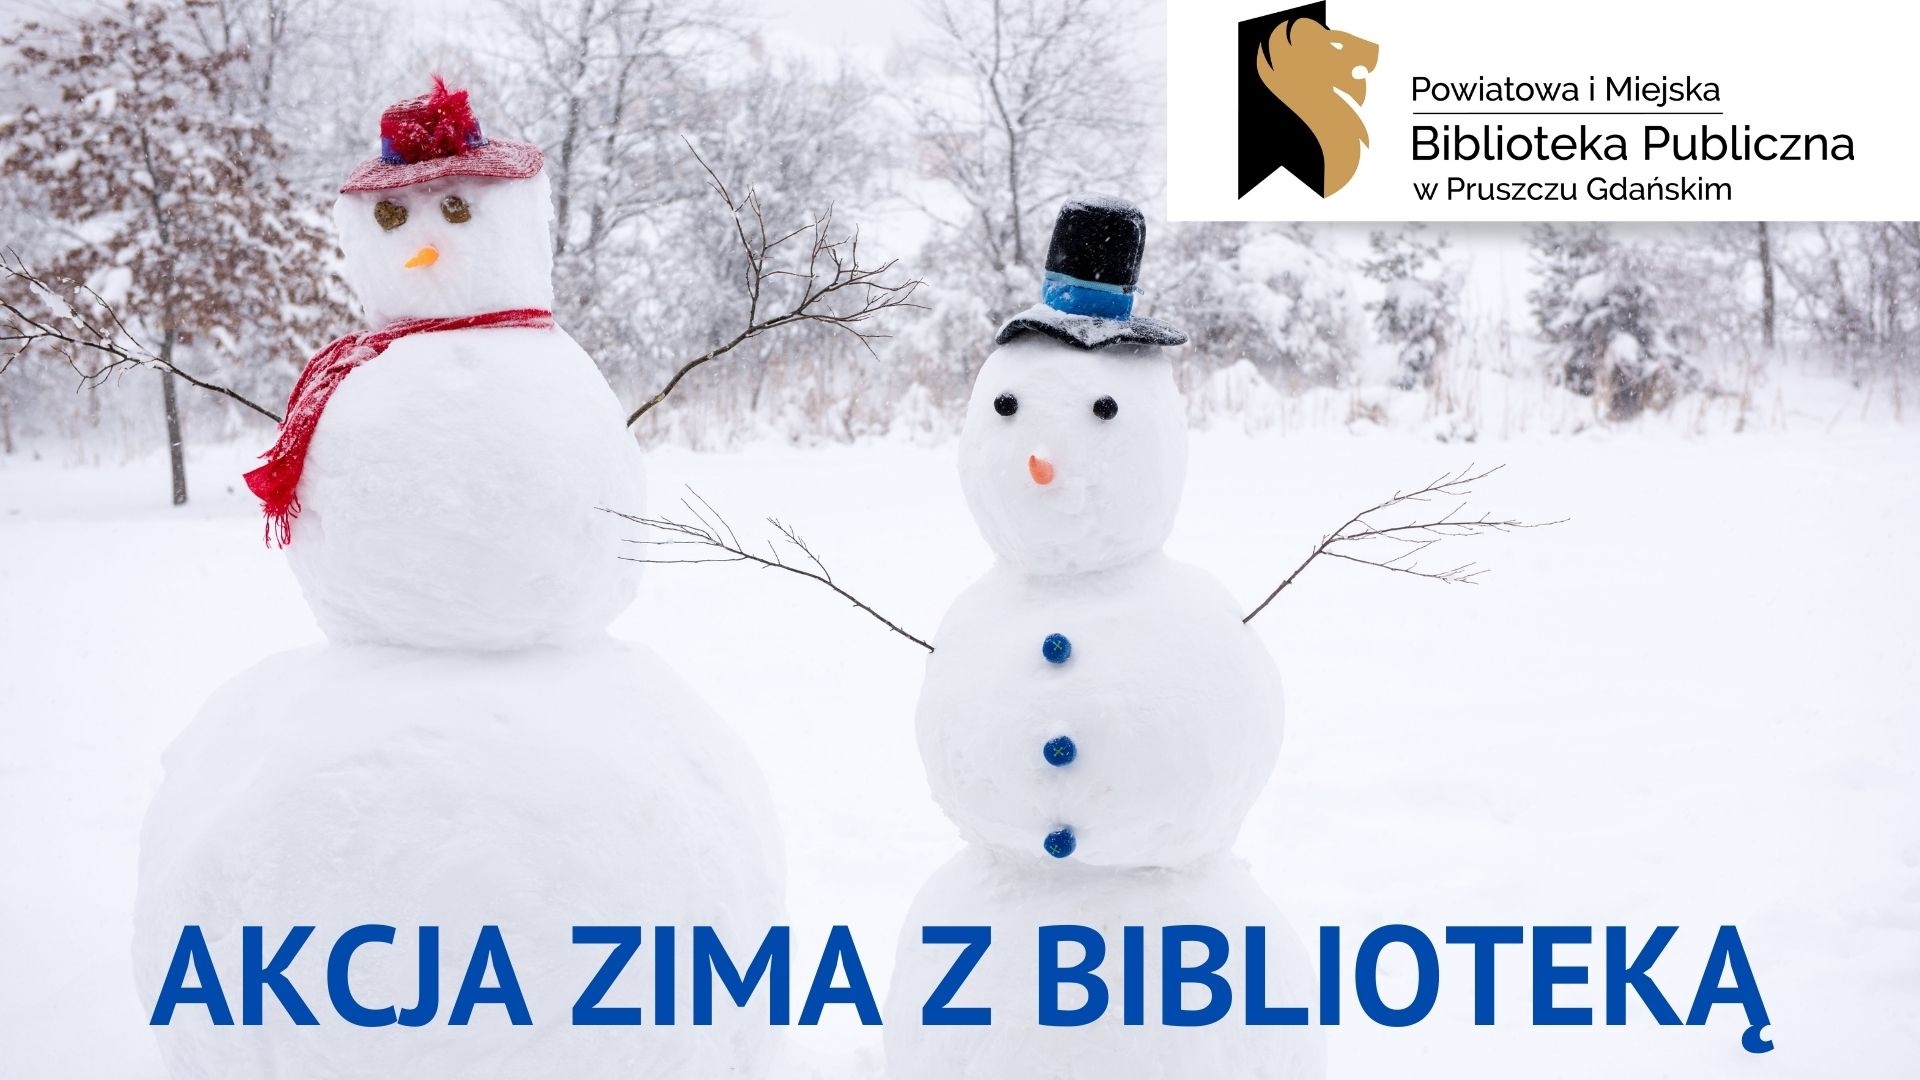 Dwa bałwany na tle zimowego krajobrazu oraz napisy: Akcja zima z bibluioteką, Powiatowa i Miejska Biblioteka Publiczna w Pruszczu Gdańskim.